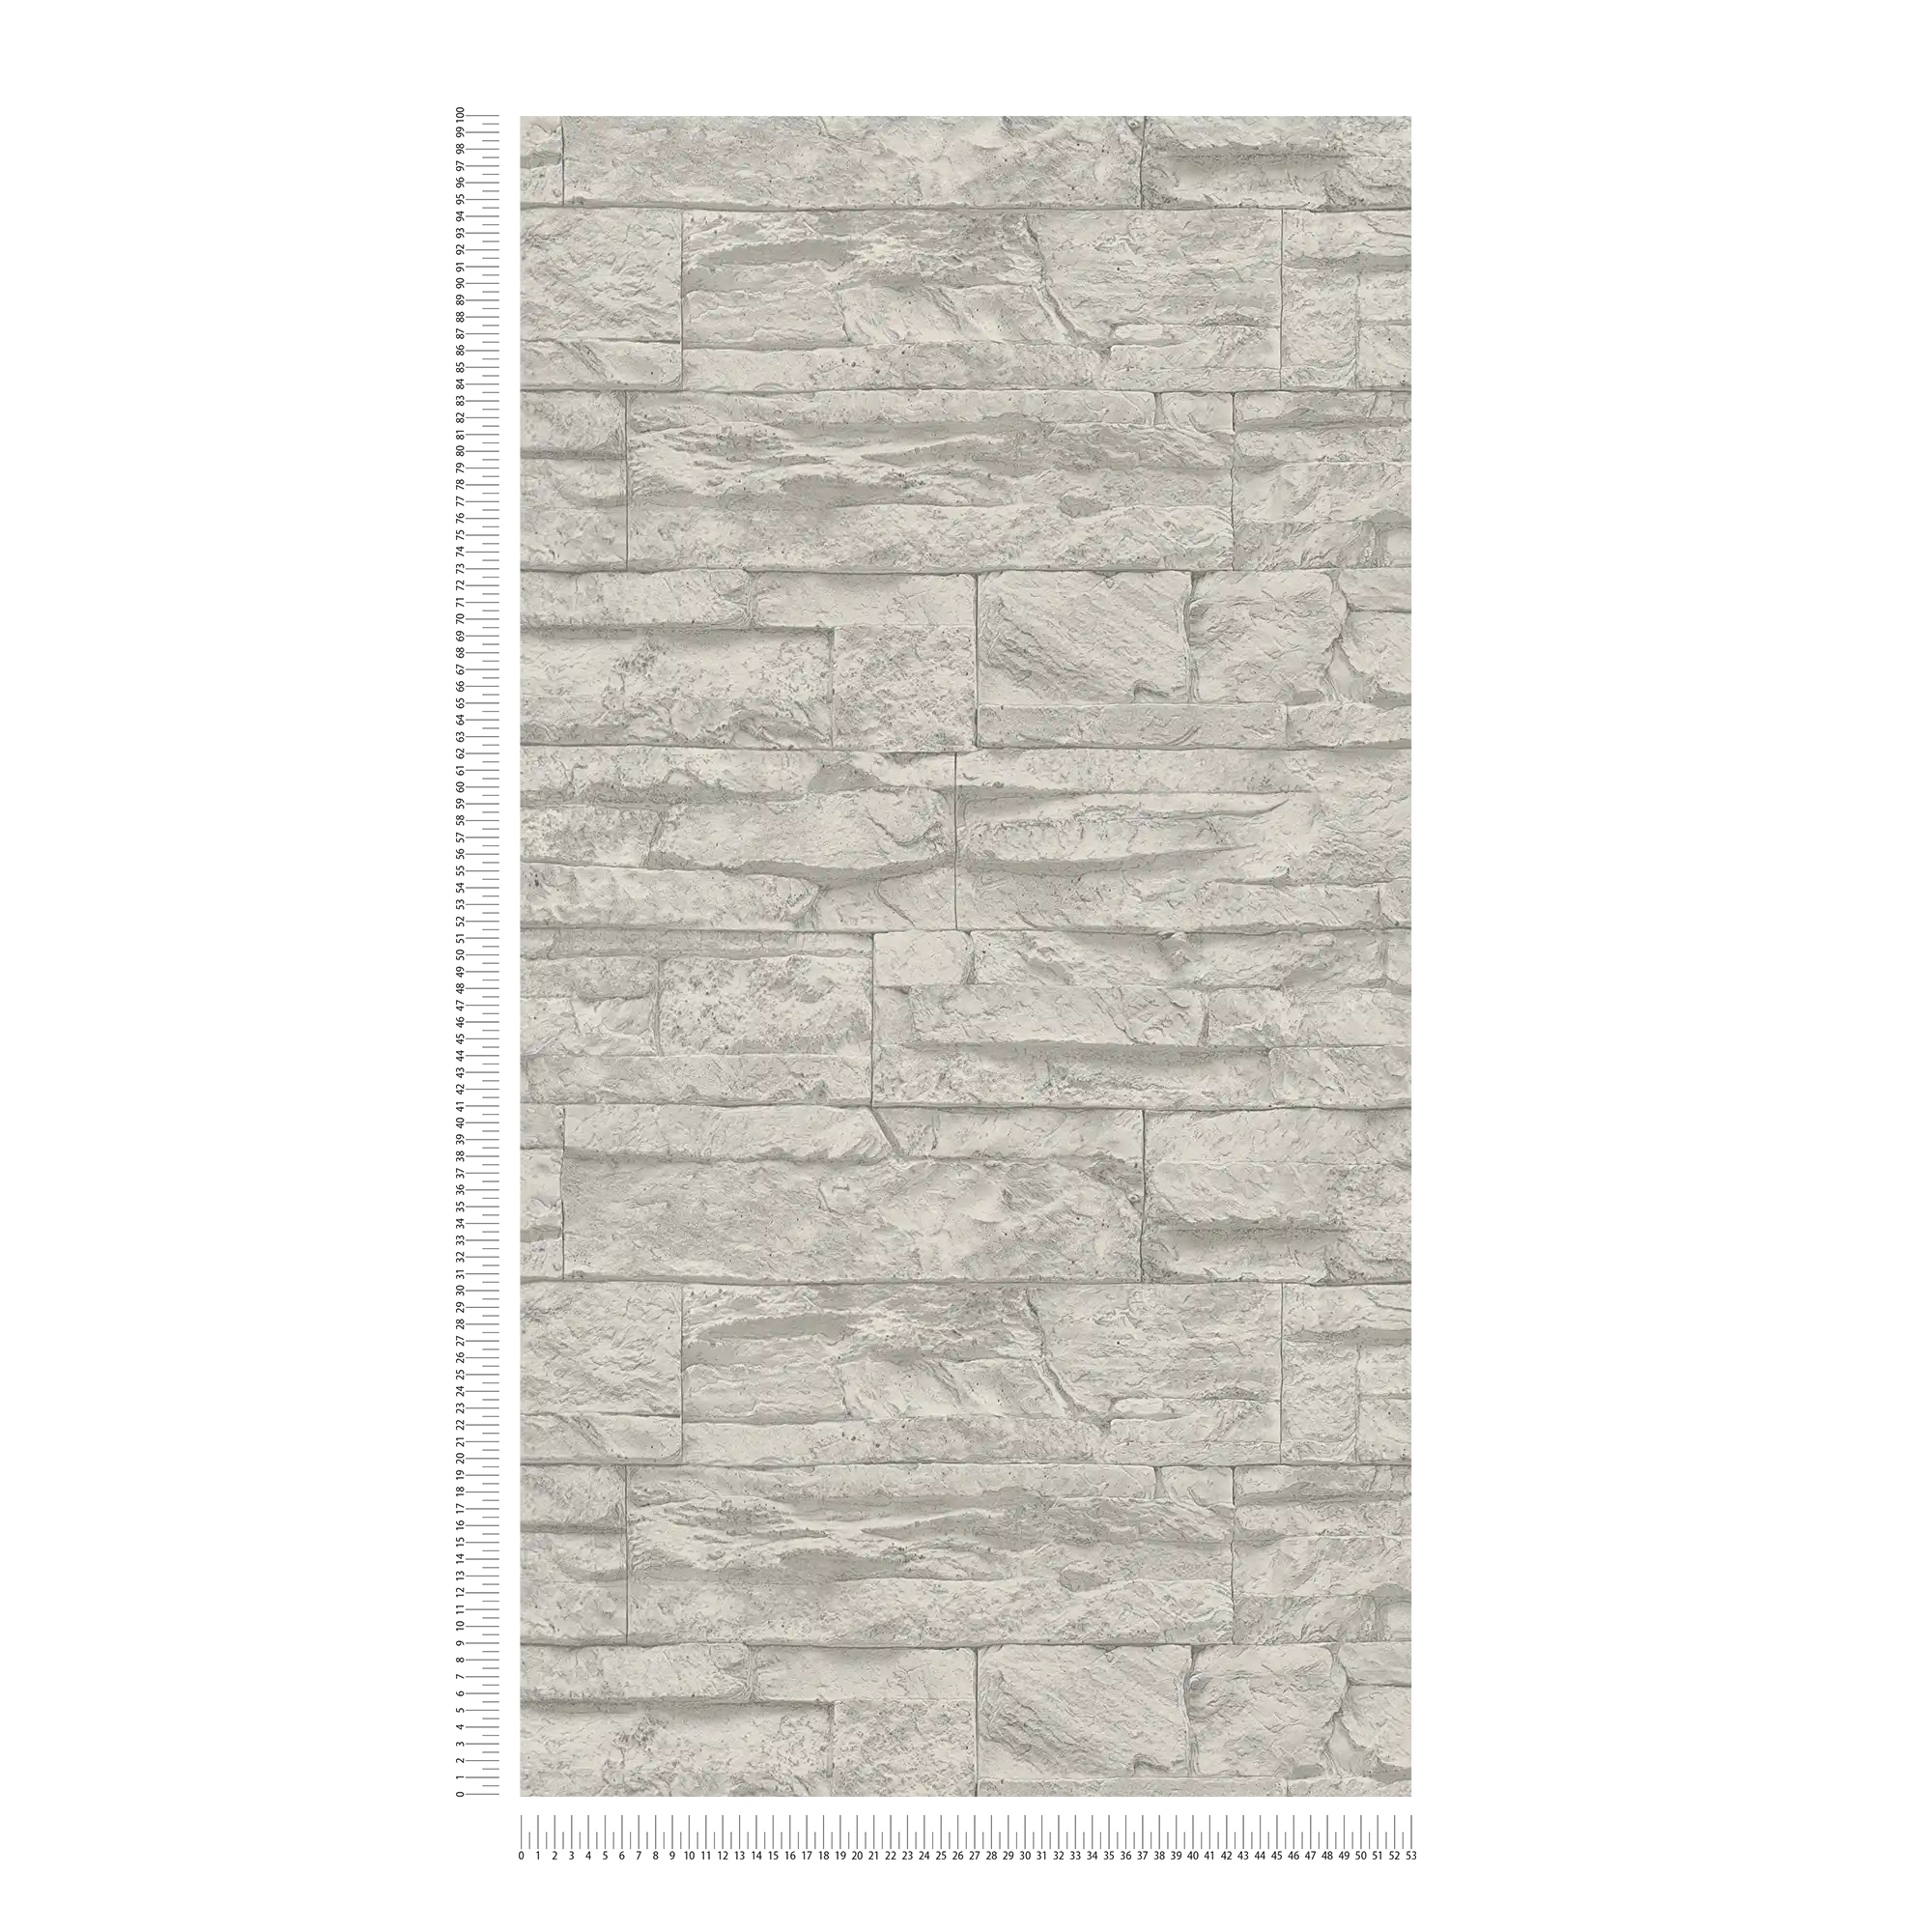             Papier peint imitation pierre naturelle détaillé & réaliste - gris, blanc
        